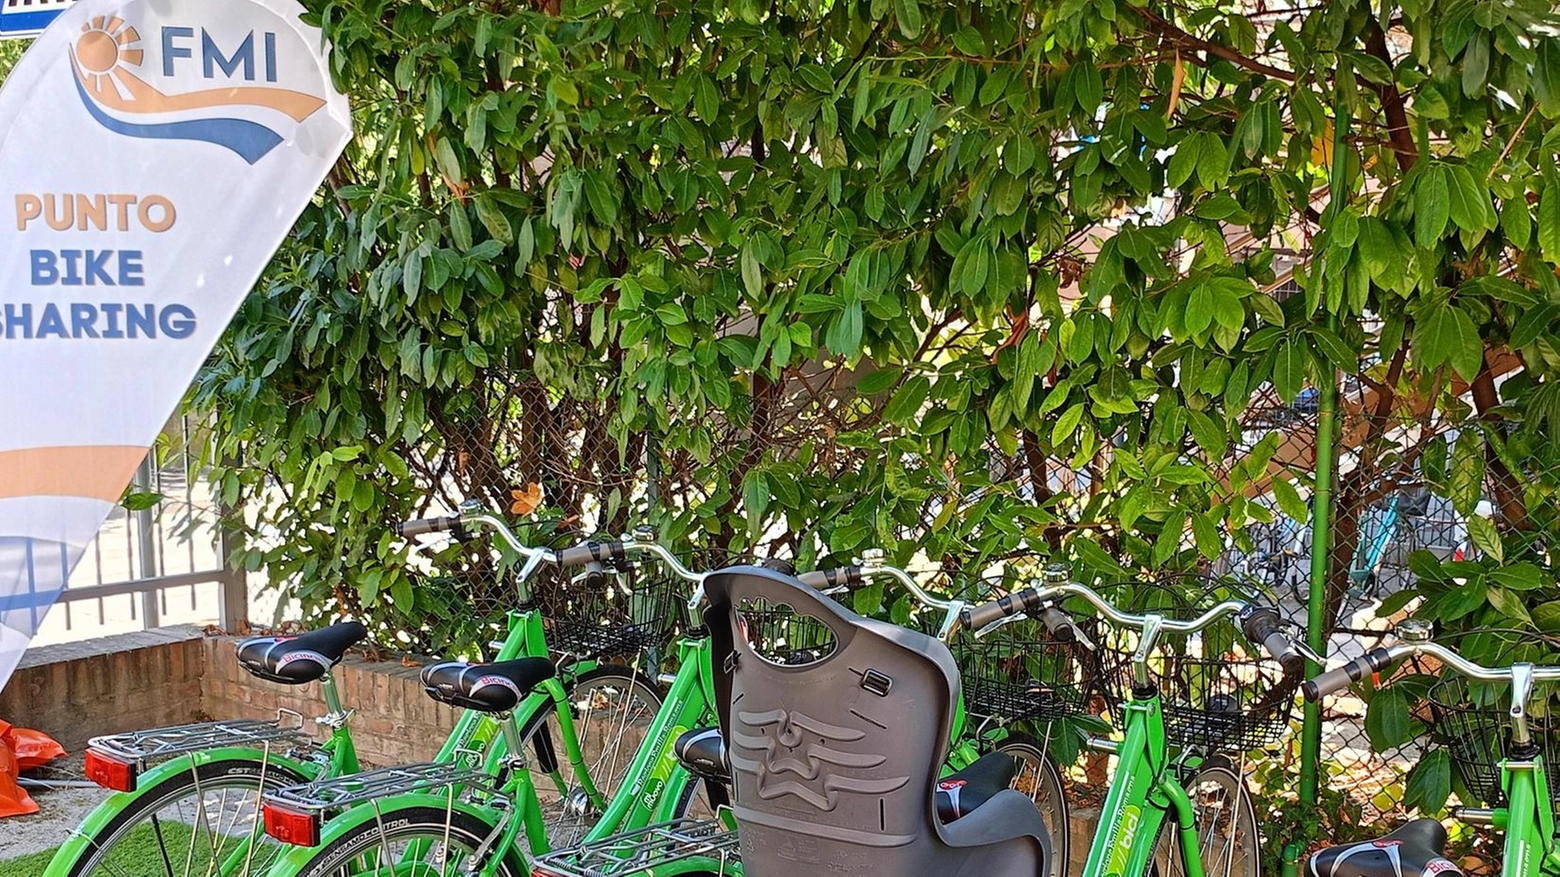 La città vista dalla bici ’Mobilità integrata’ attiva un punto di bike sharing